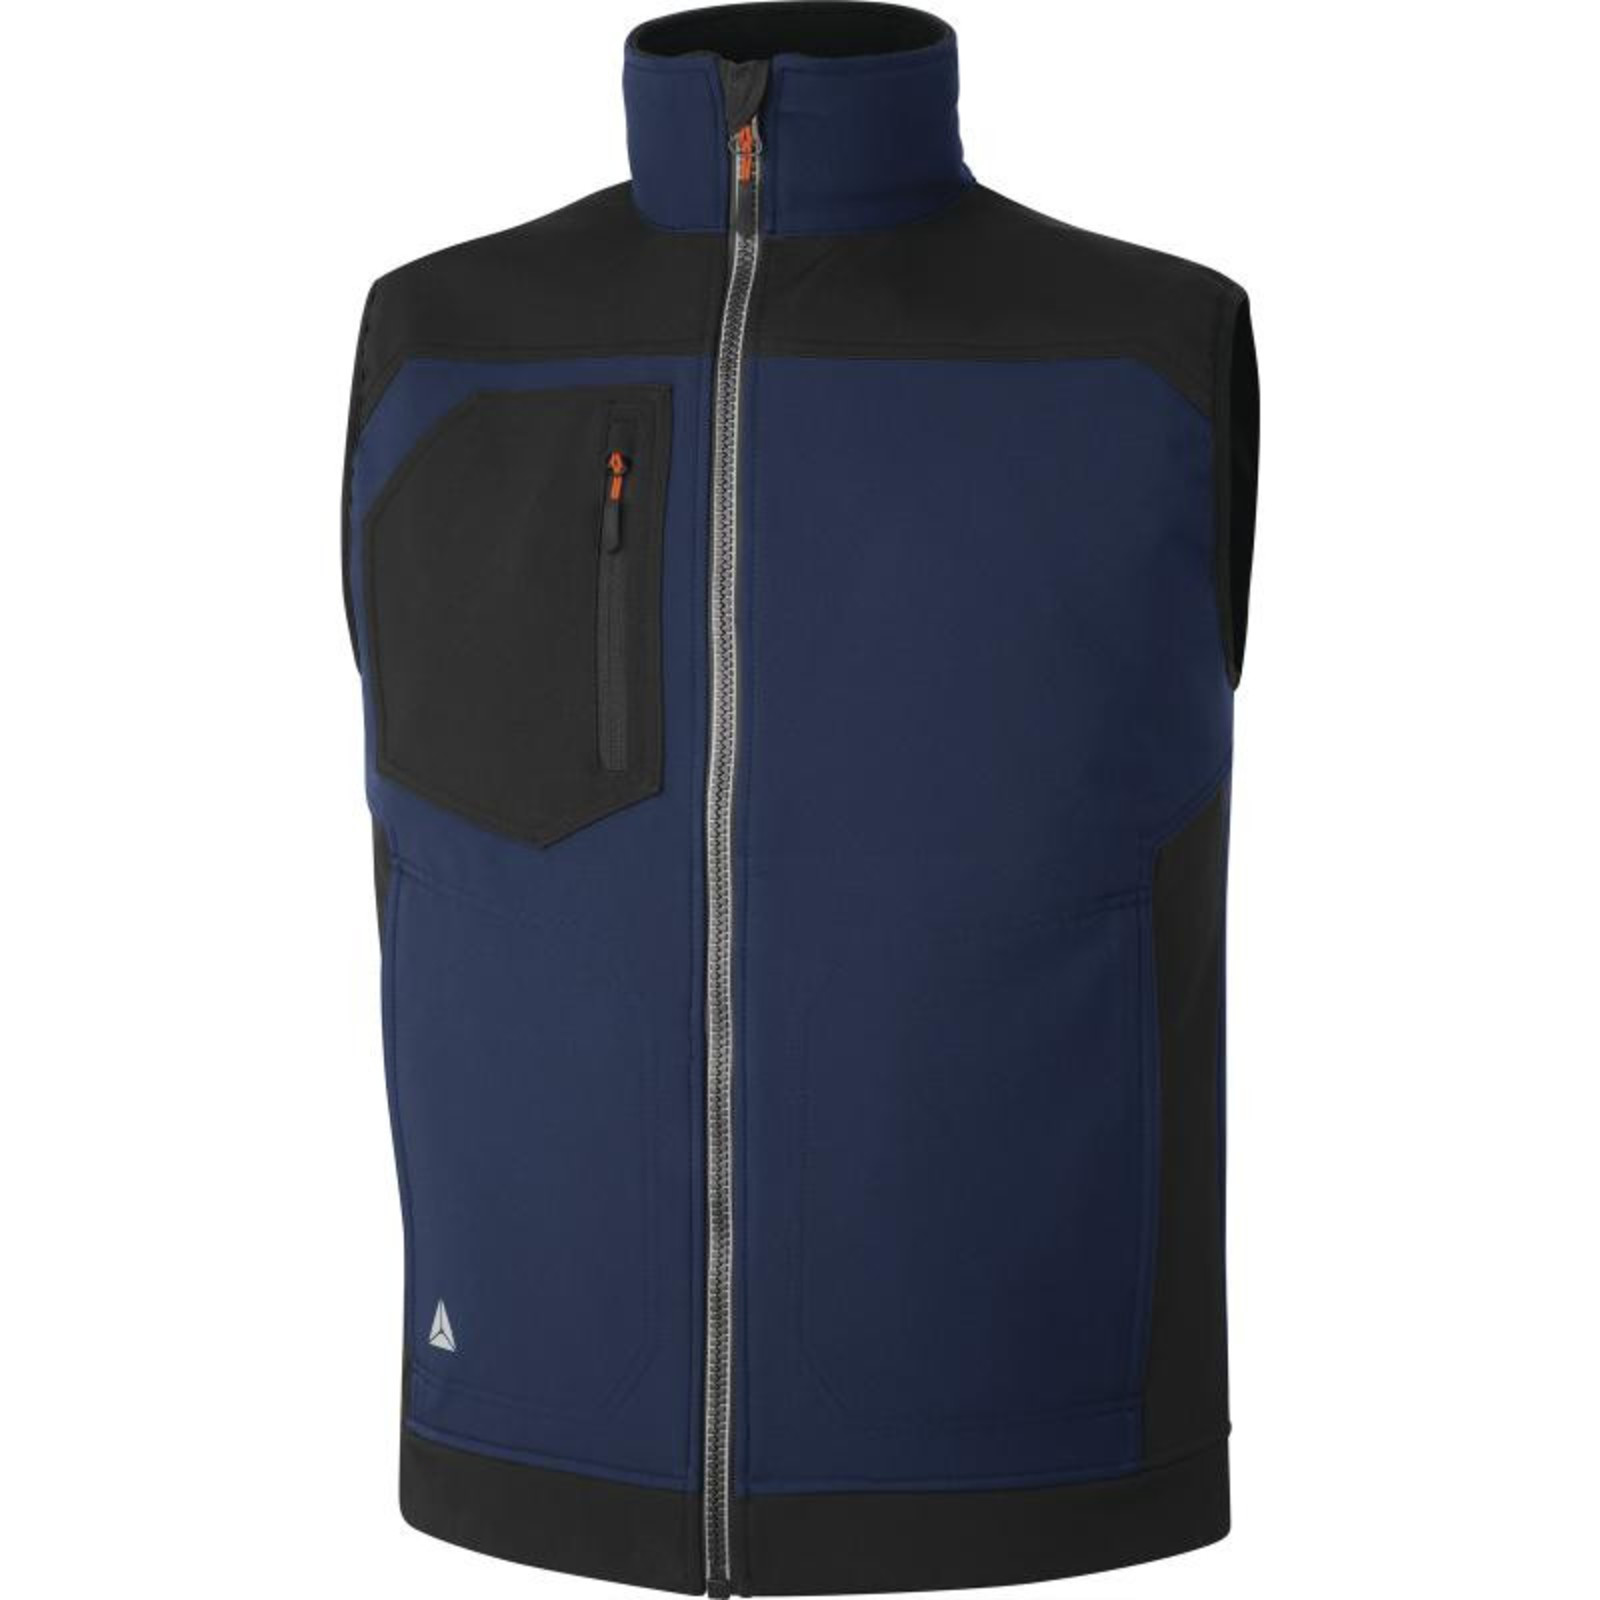 Softshellová vesta Delta Plus Holen - veľkosť: 3XL, farba: námornícka modrá/čierna